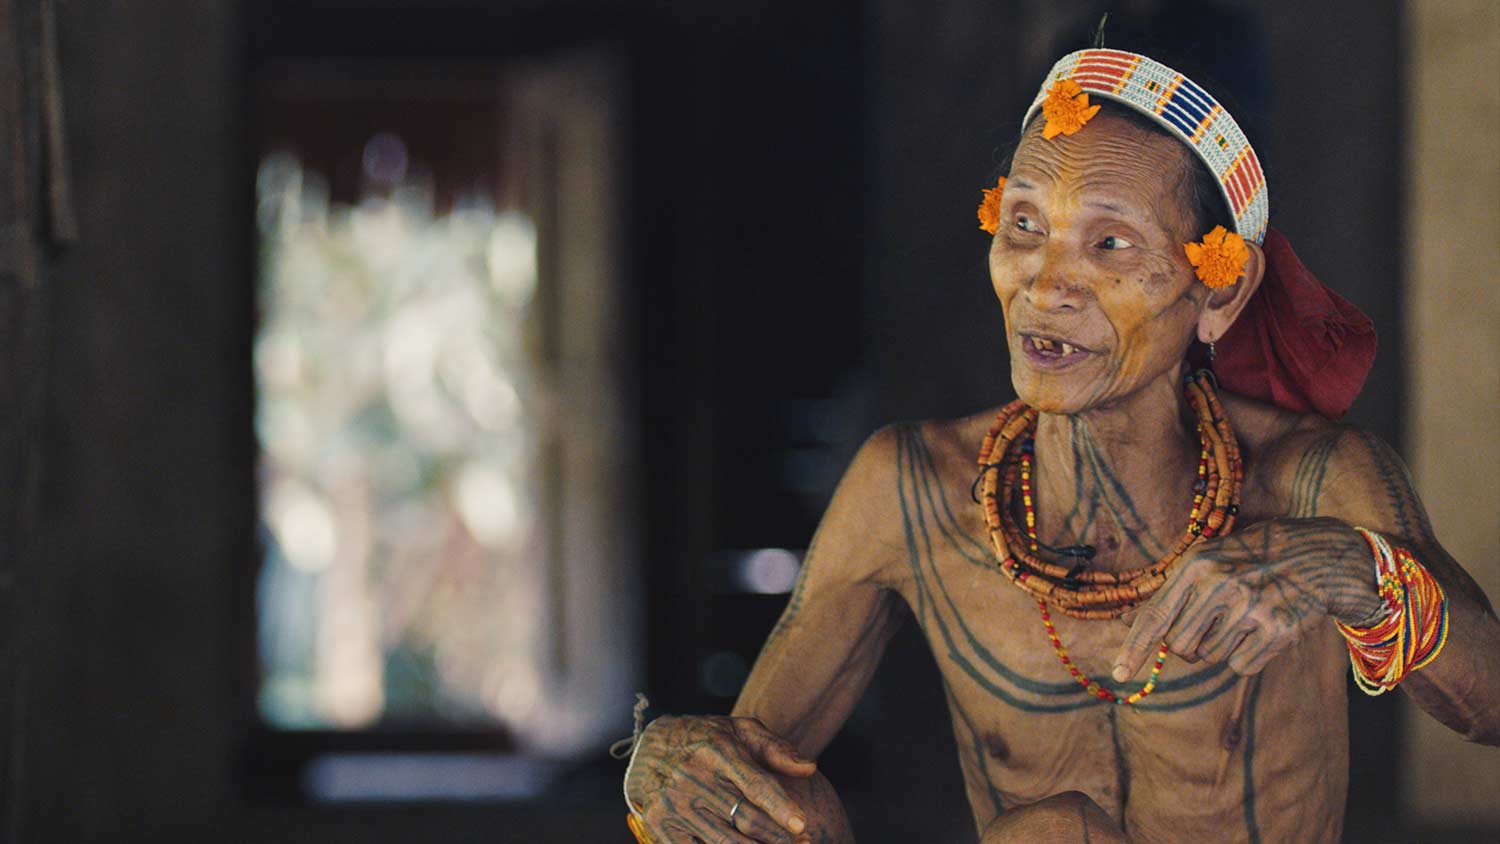 Die Tattoos der Mentawai symbolisieren zum Beispiel ihre Identität oder ihren Glauben. / Foto: Michael Zomer.